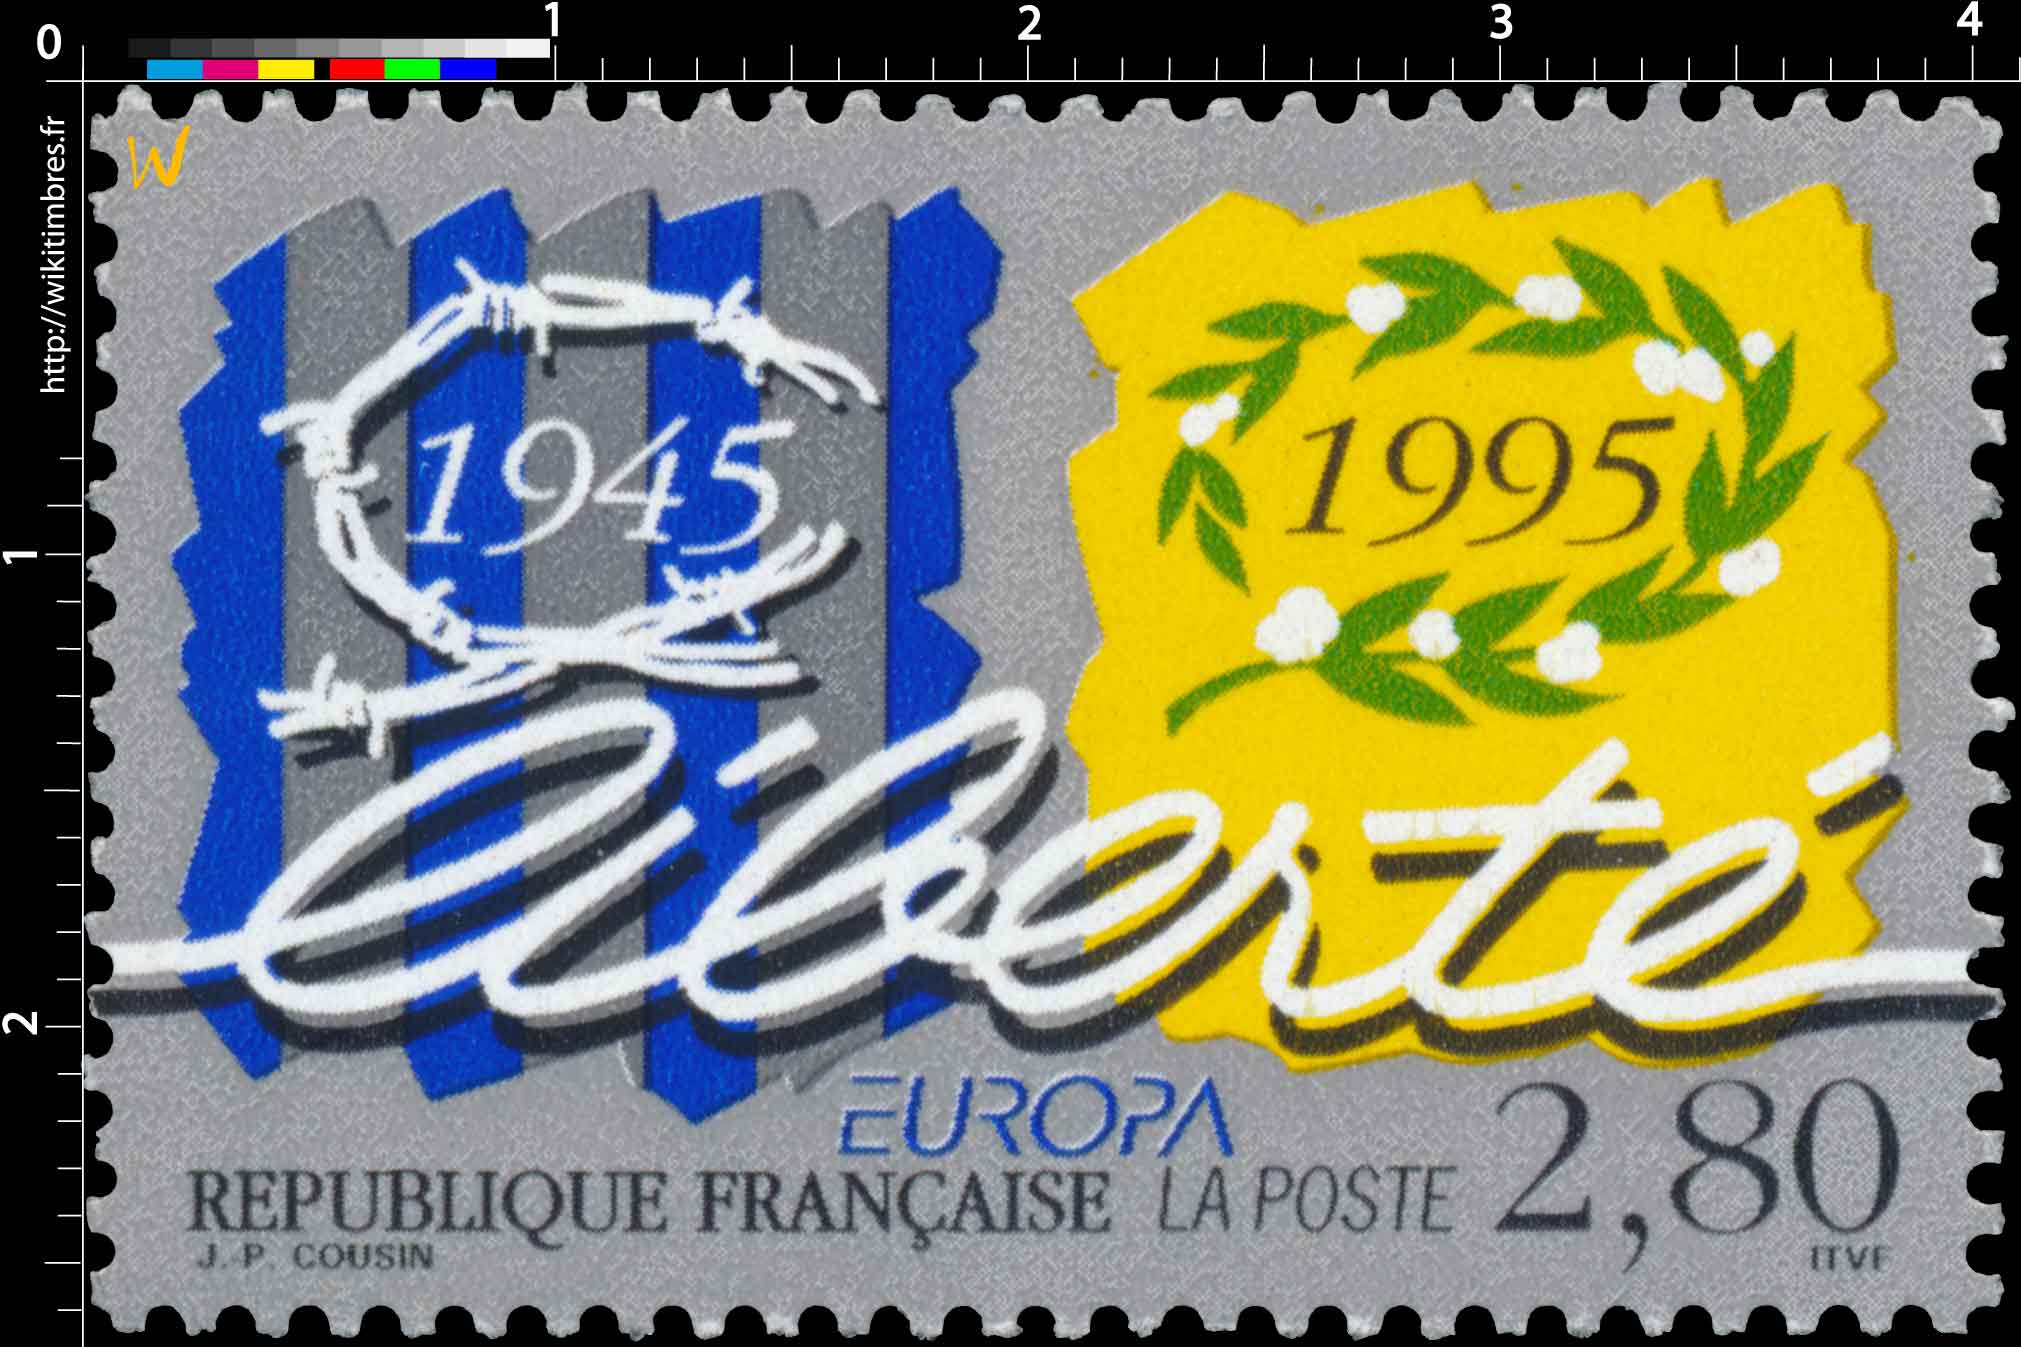 EUROPA liberté 1945-1995